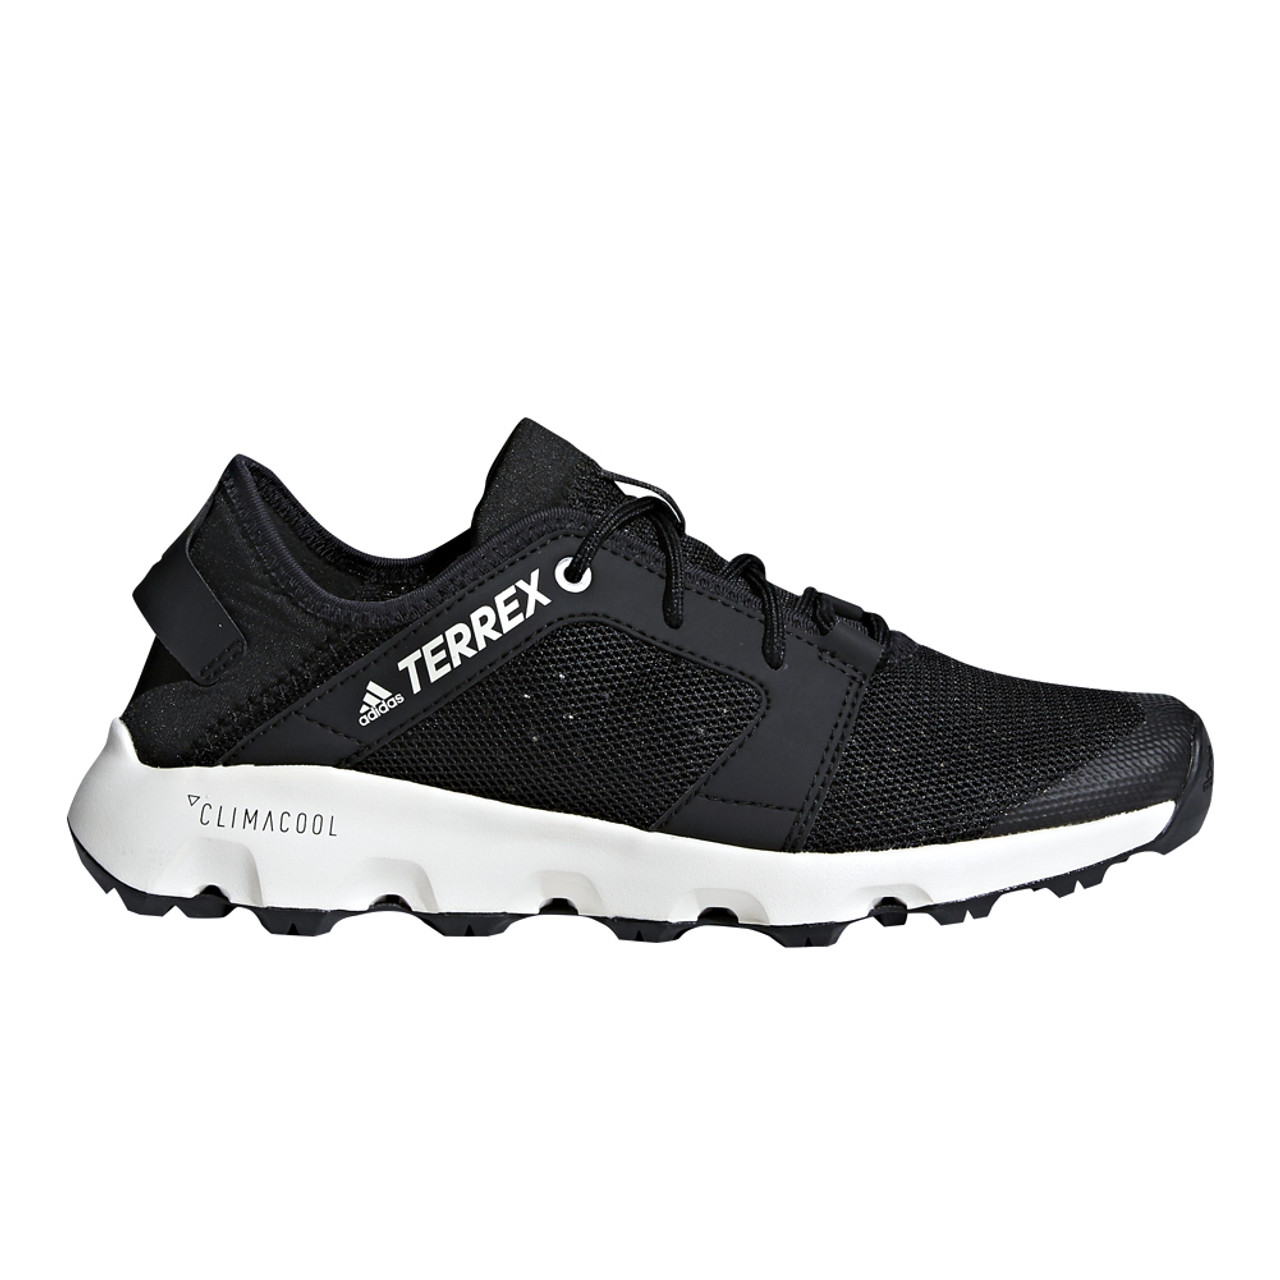 Escándalo Apellido escena Adidas Women's Terrex CC Voyager Sleek Water Shoe - Black | Discount Adidas  Ladies Athletic Shoe & More - Shoolu.com | Shoolu.com